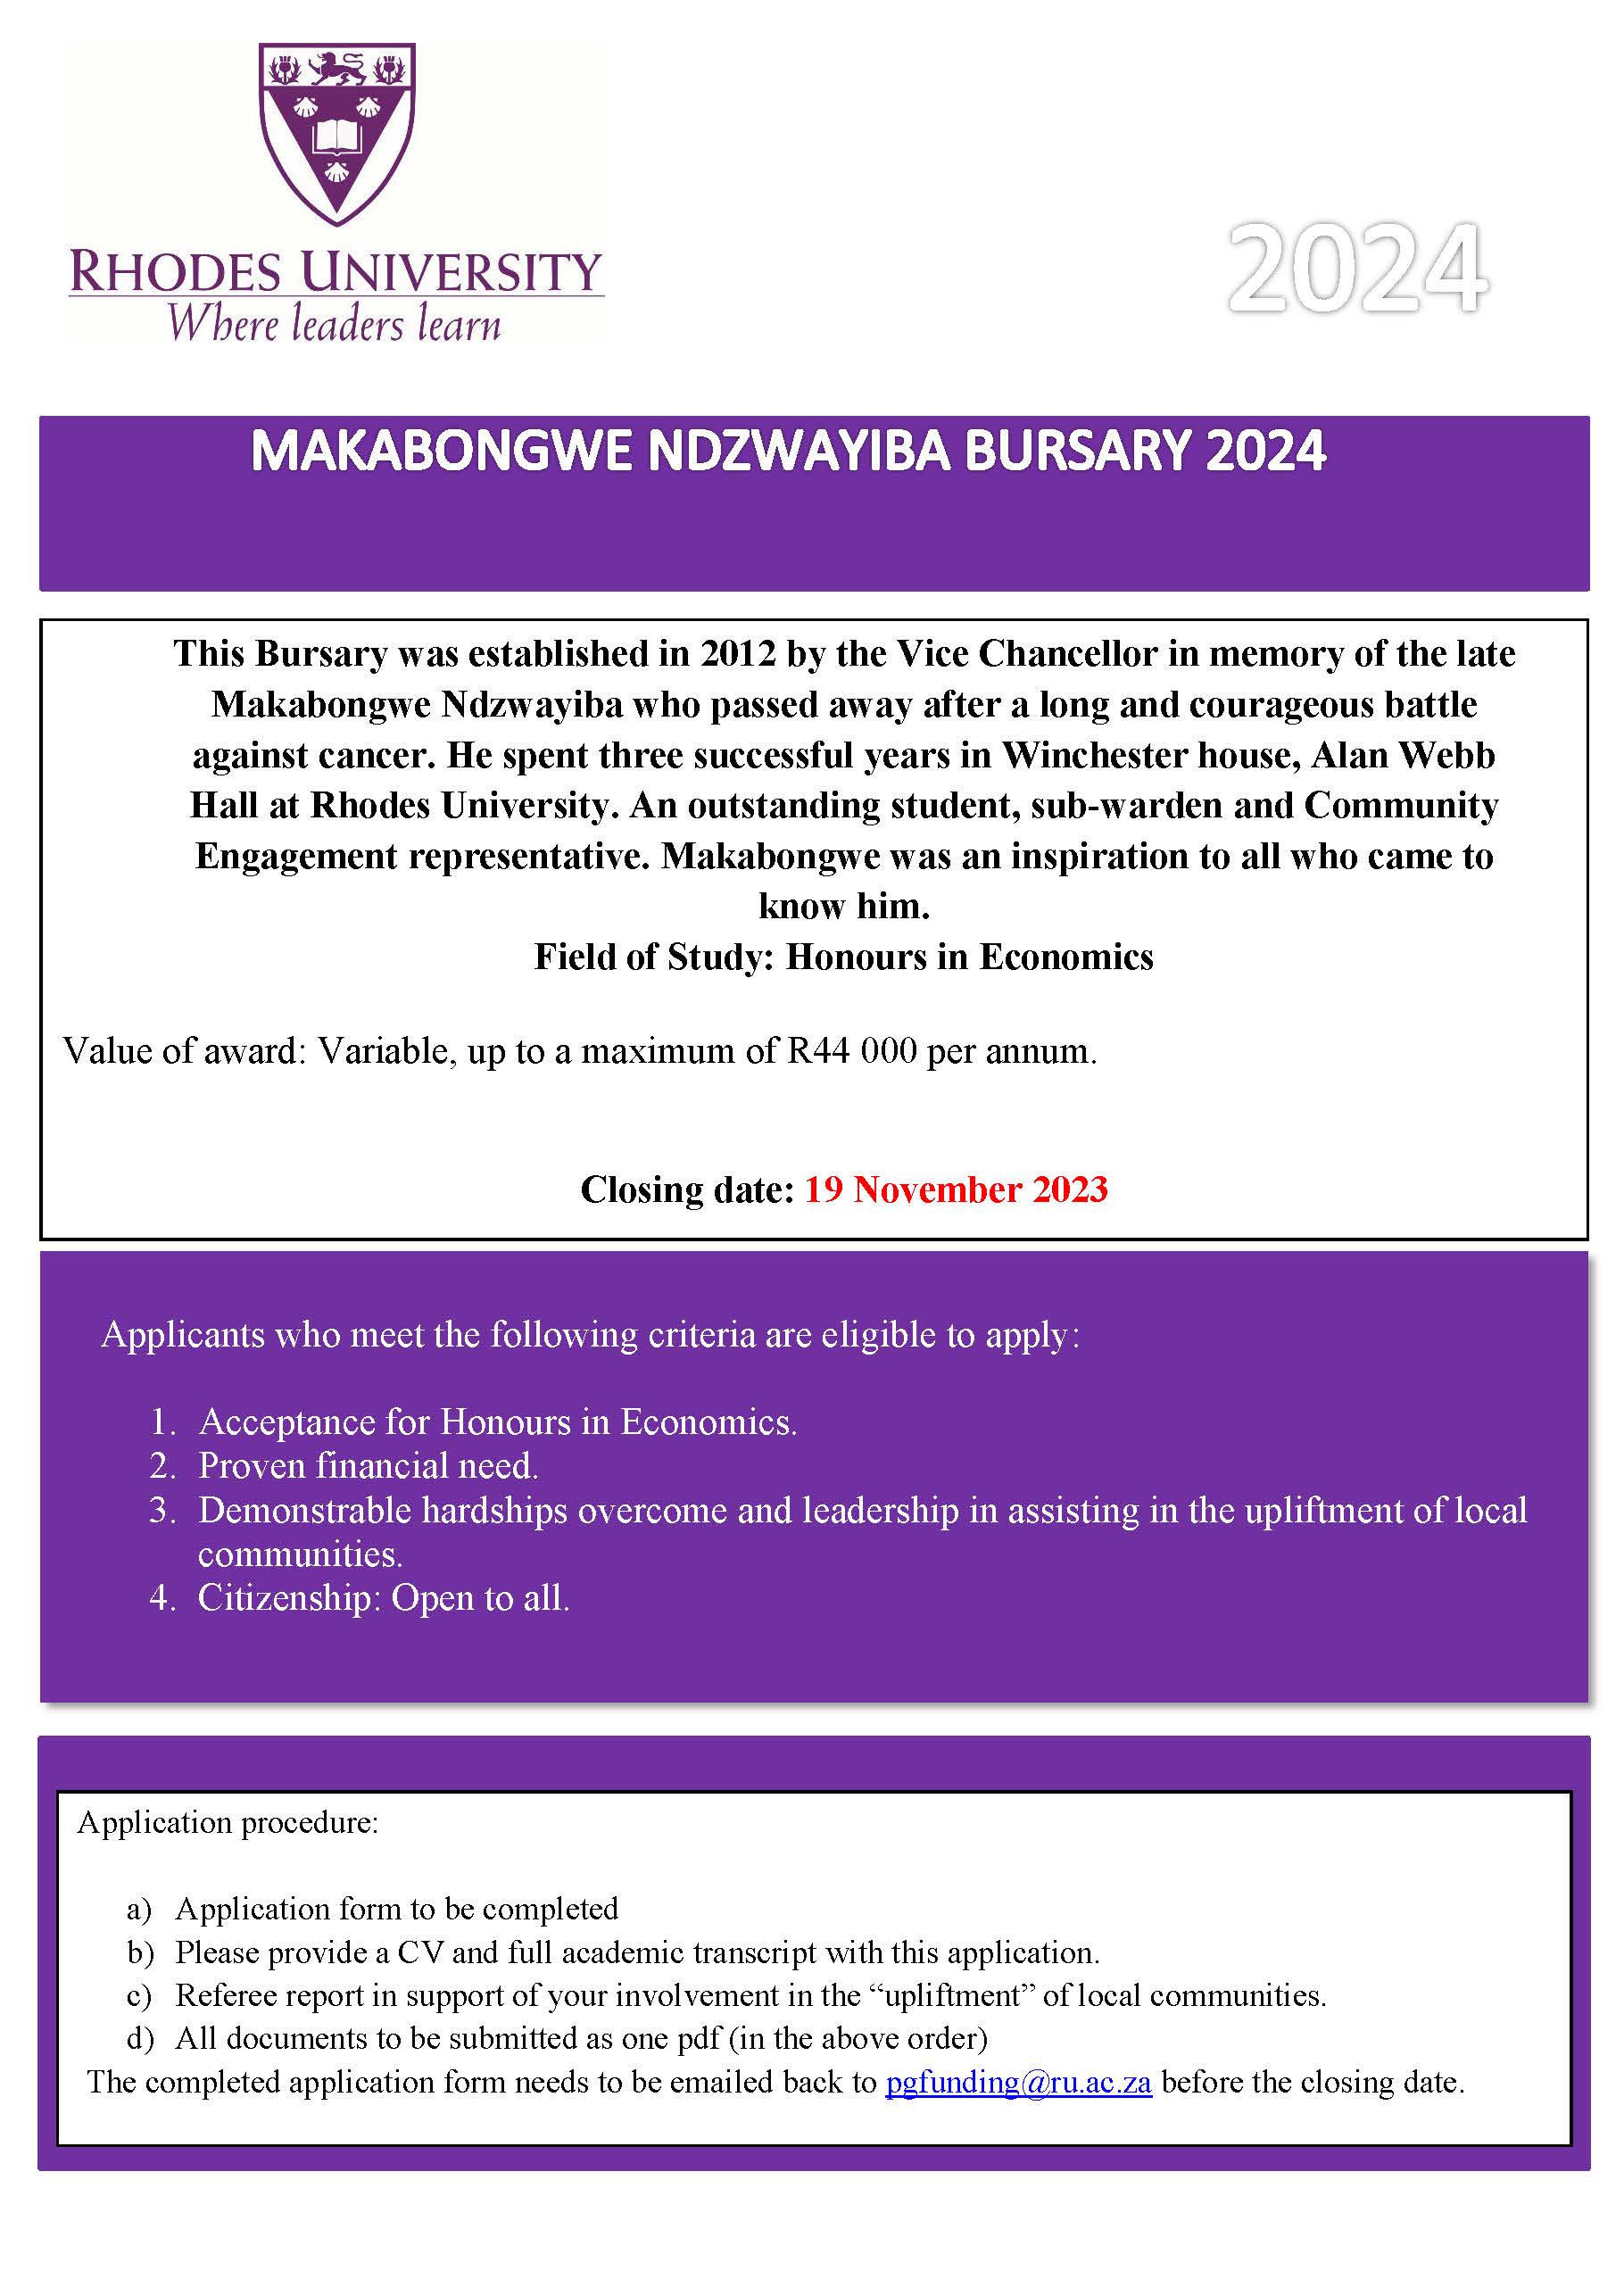 Makabongwe Ndzwayiba Bursary